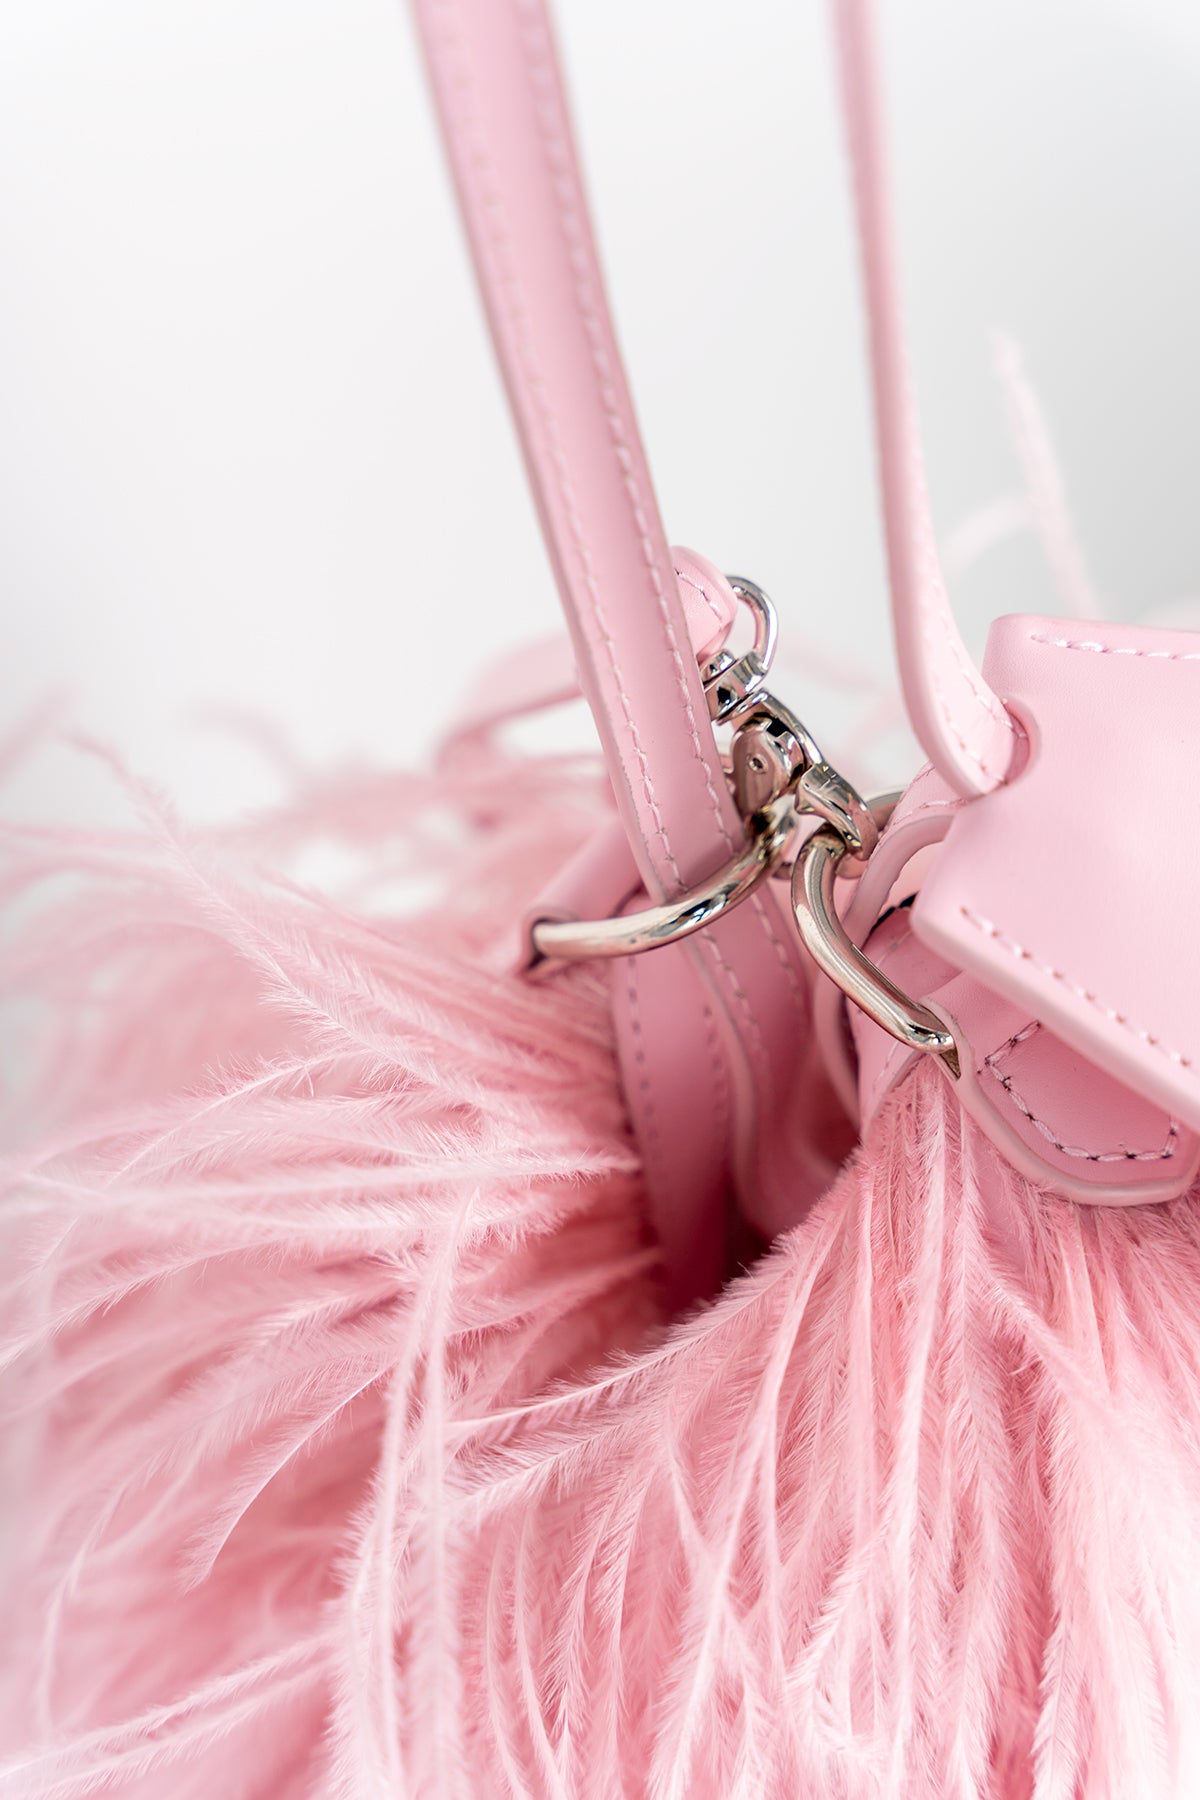 The Pink Ostrich Handbag